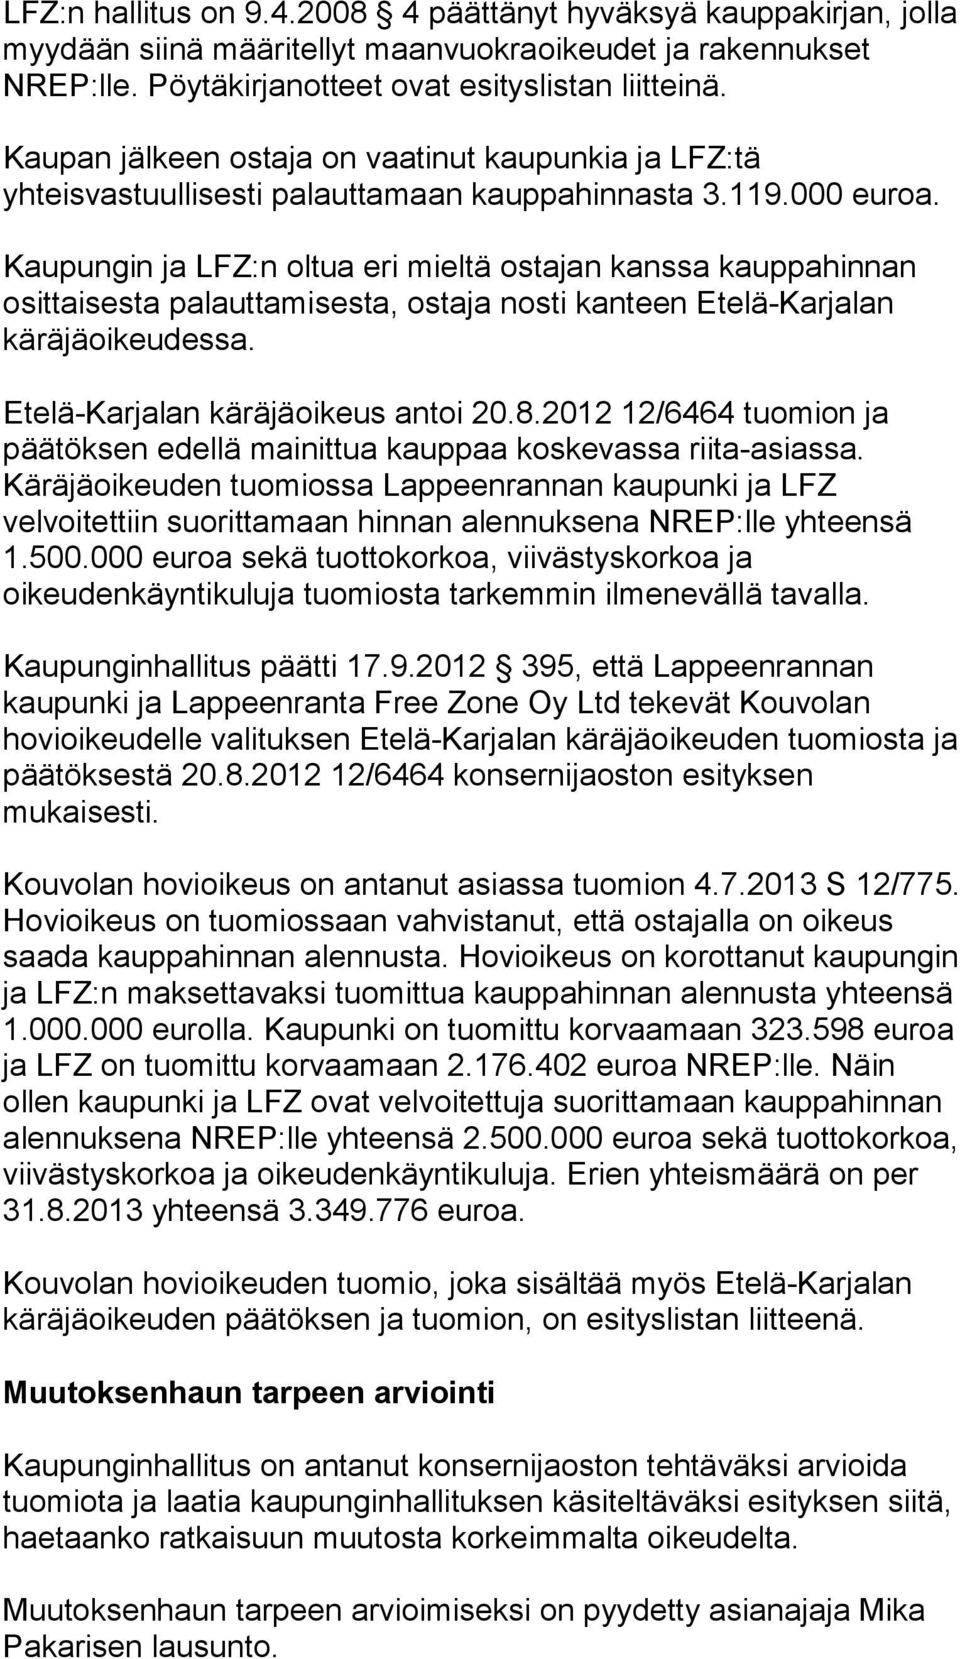 Kaupungin ja LFZ:n oltua eri mieltä ostajan kanssa kauppahinnan osittaisesta palauttamisesta, ostaja nosti kanteen Etelä-Karjalan käräjäoikeudessa. Etelä-Karjalan käräjäoikeus antoi 20.8.